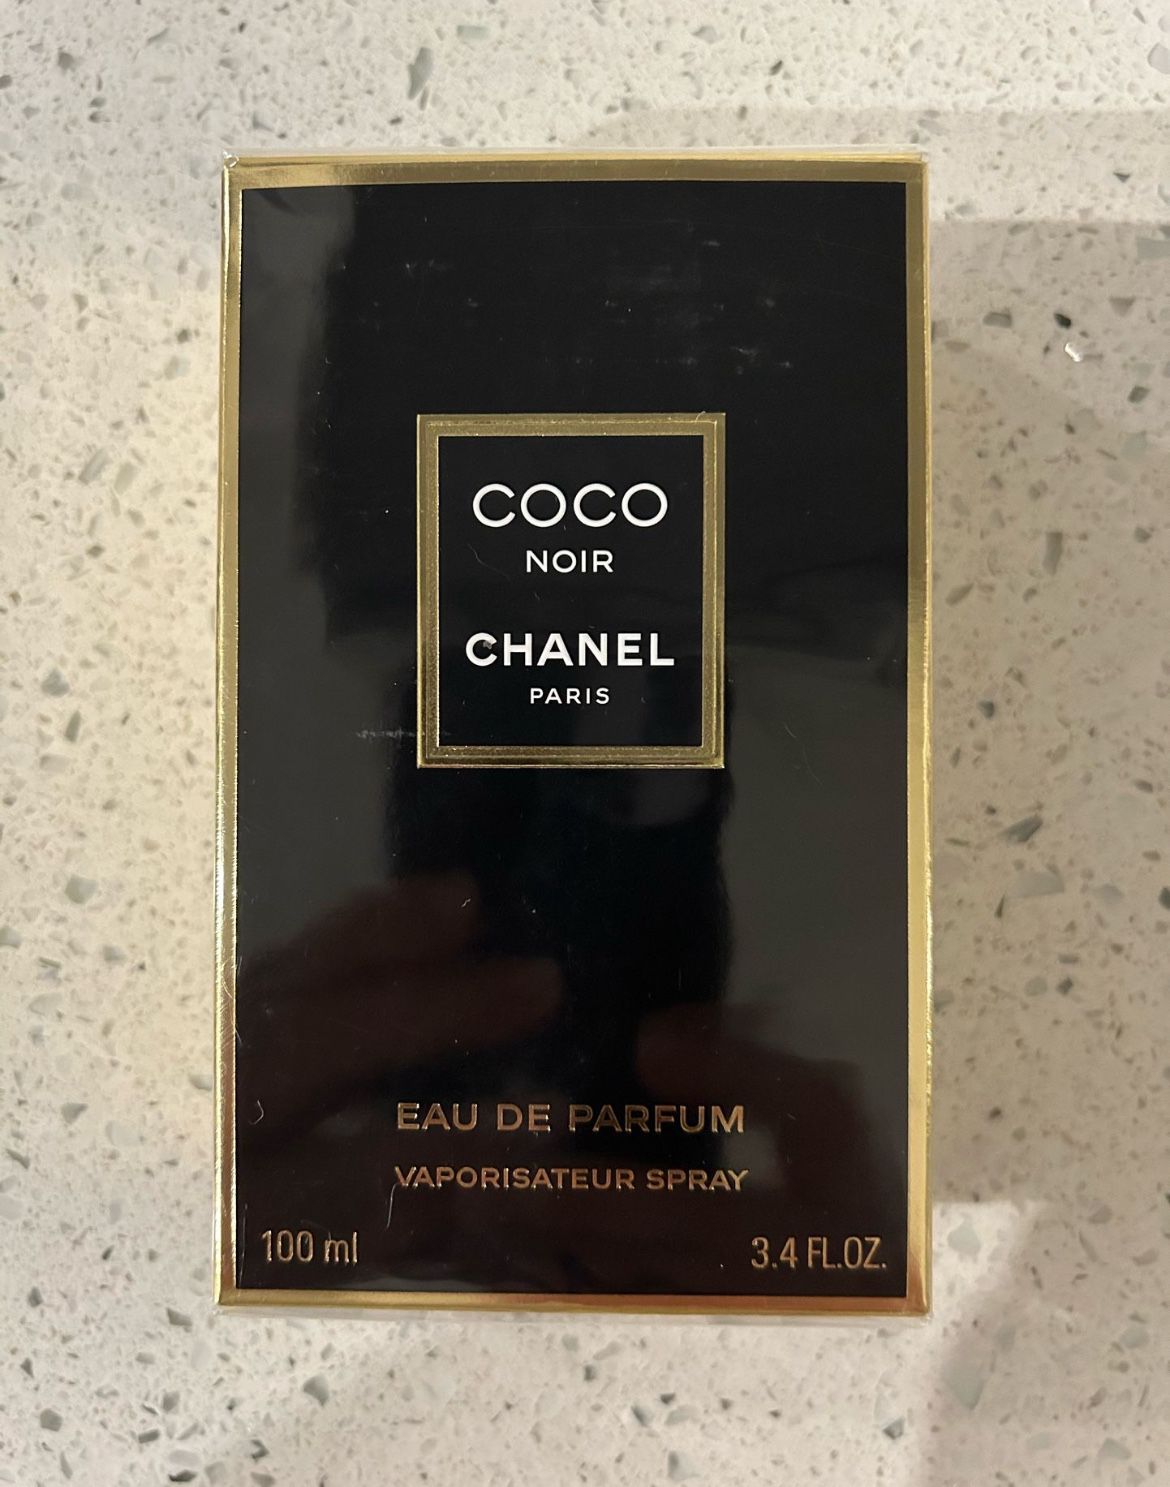 Chanel COCO NOIR Eau de Parfum 3.4fl oz